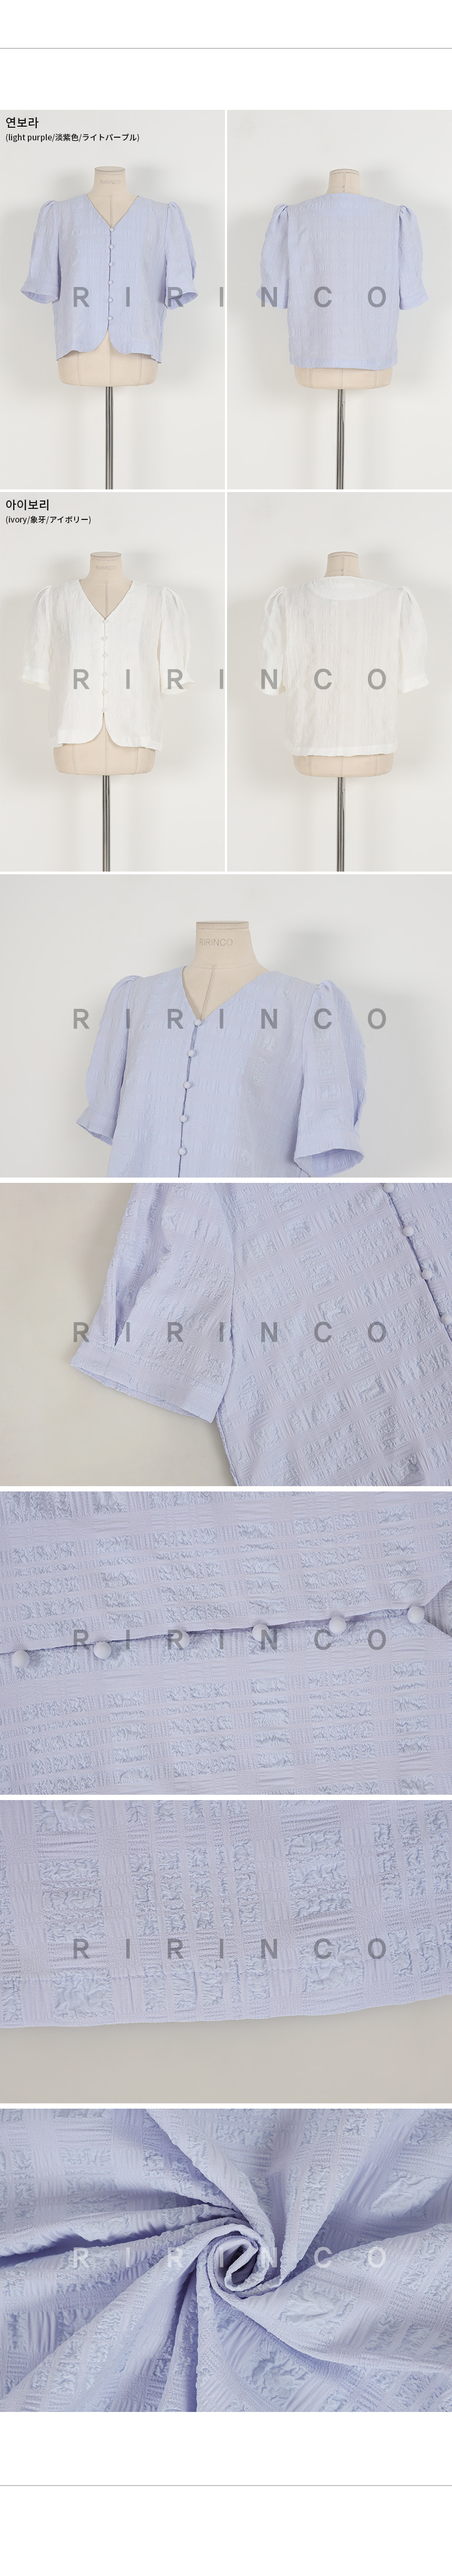 RIRINCO リンクルⅤネックパフ袖ブラウス